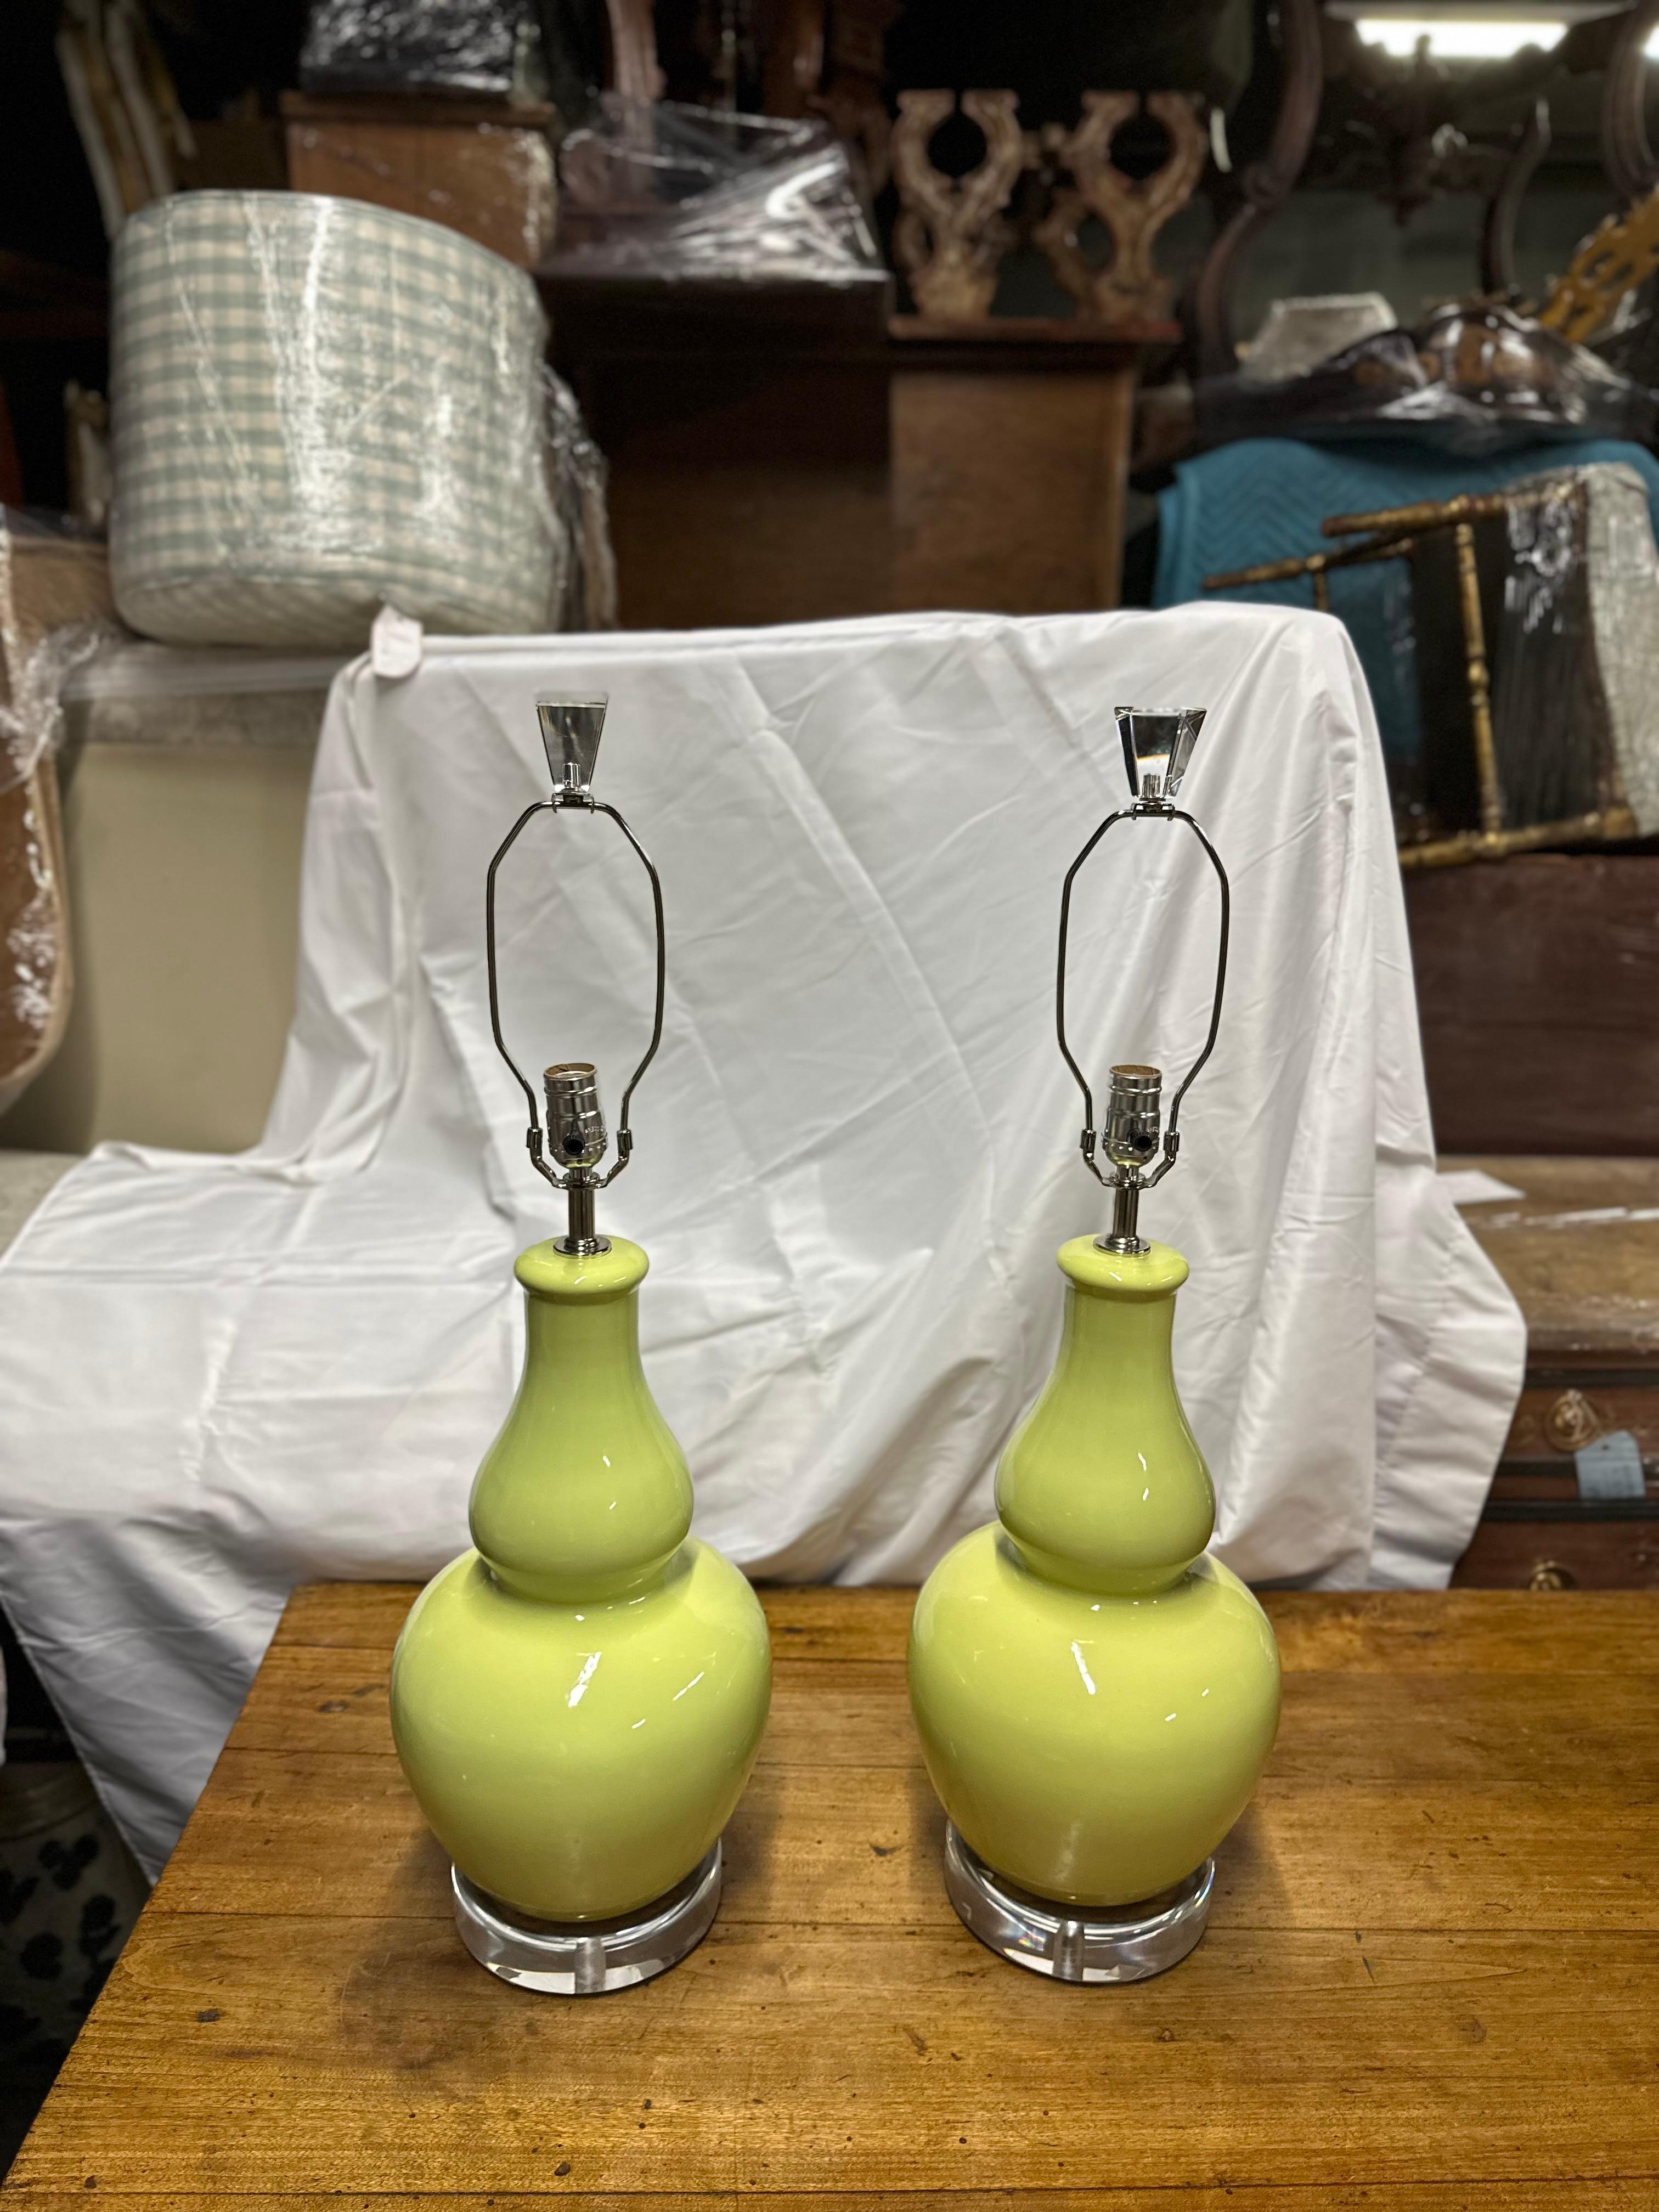 Le fabricant de ces lampes est inconnu.
Cette paire de lampes en céramique vert pistache avec abat-jour et base en lucite respire l'élégance et la sophistication moderne. La teinte douce et discrète du vert pistache apporte une touche de couleur